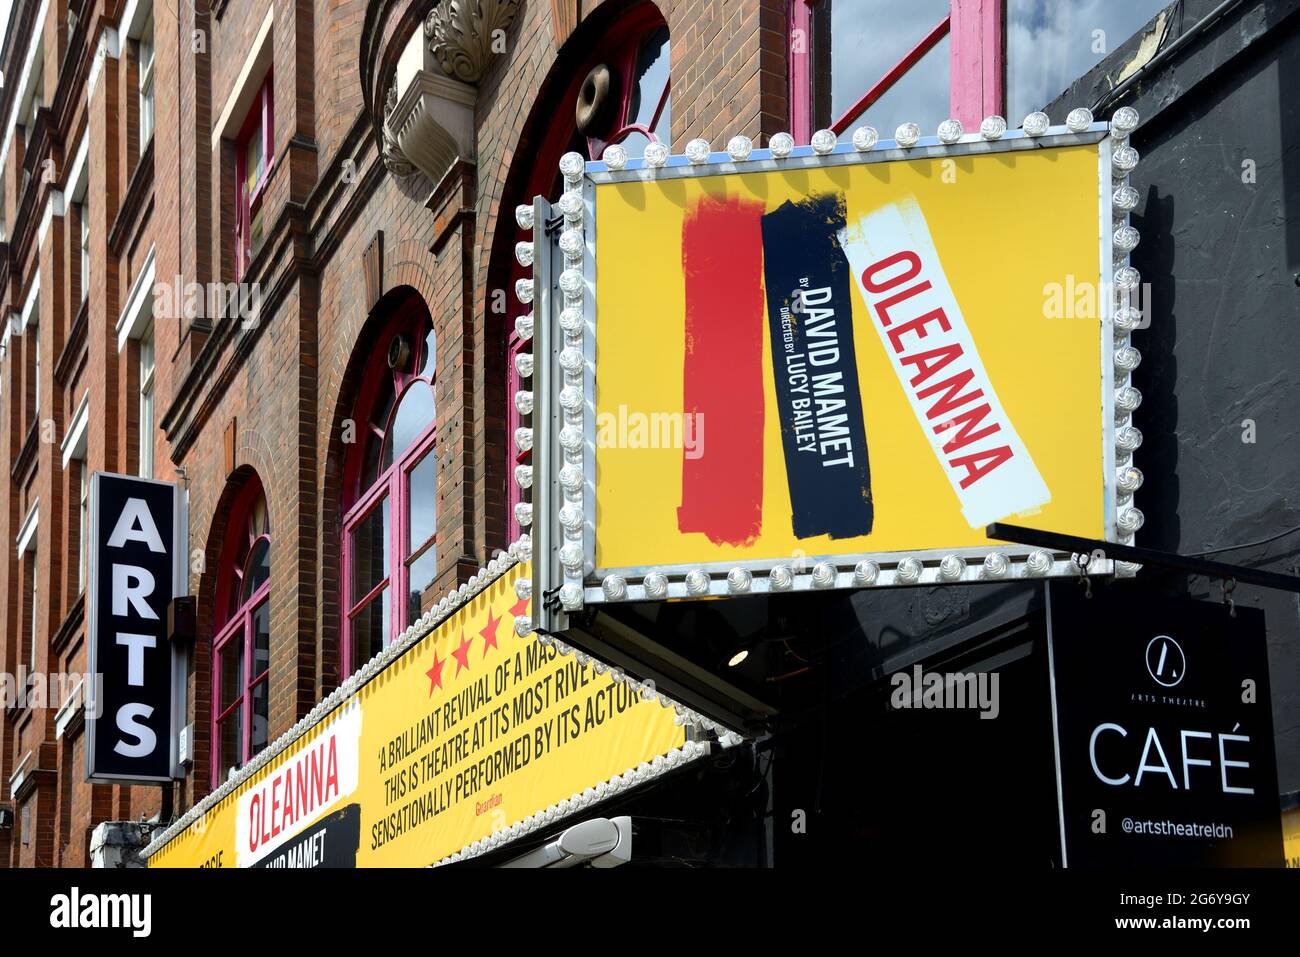 Londra, Inghilterra, Regno Unito. 'Oleanaa' di David Mamet al Teatro dell'Arte, Luglio 2021 Foto Stock